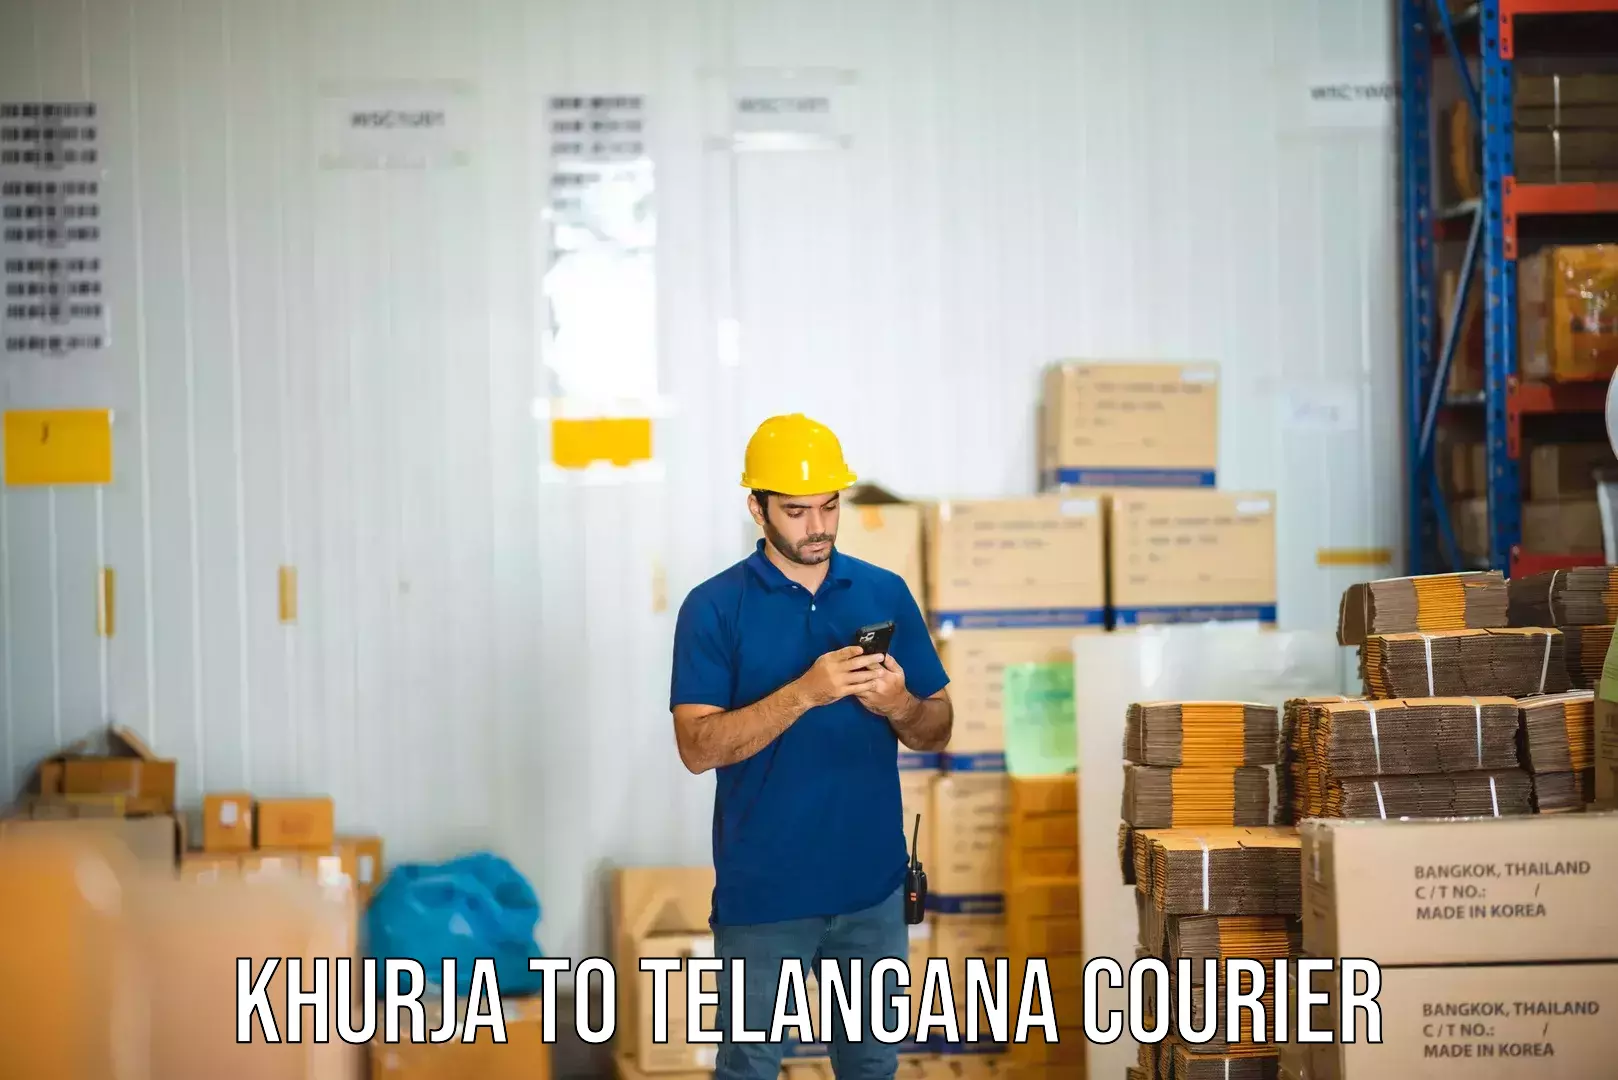 Next-day delivery options Khurja to Bhuvanagiri